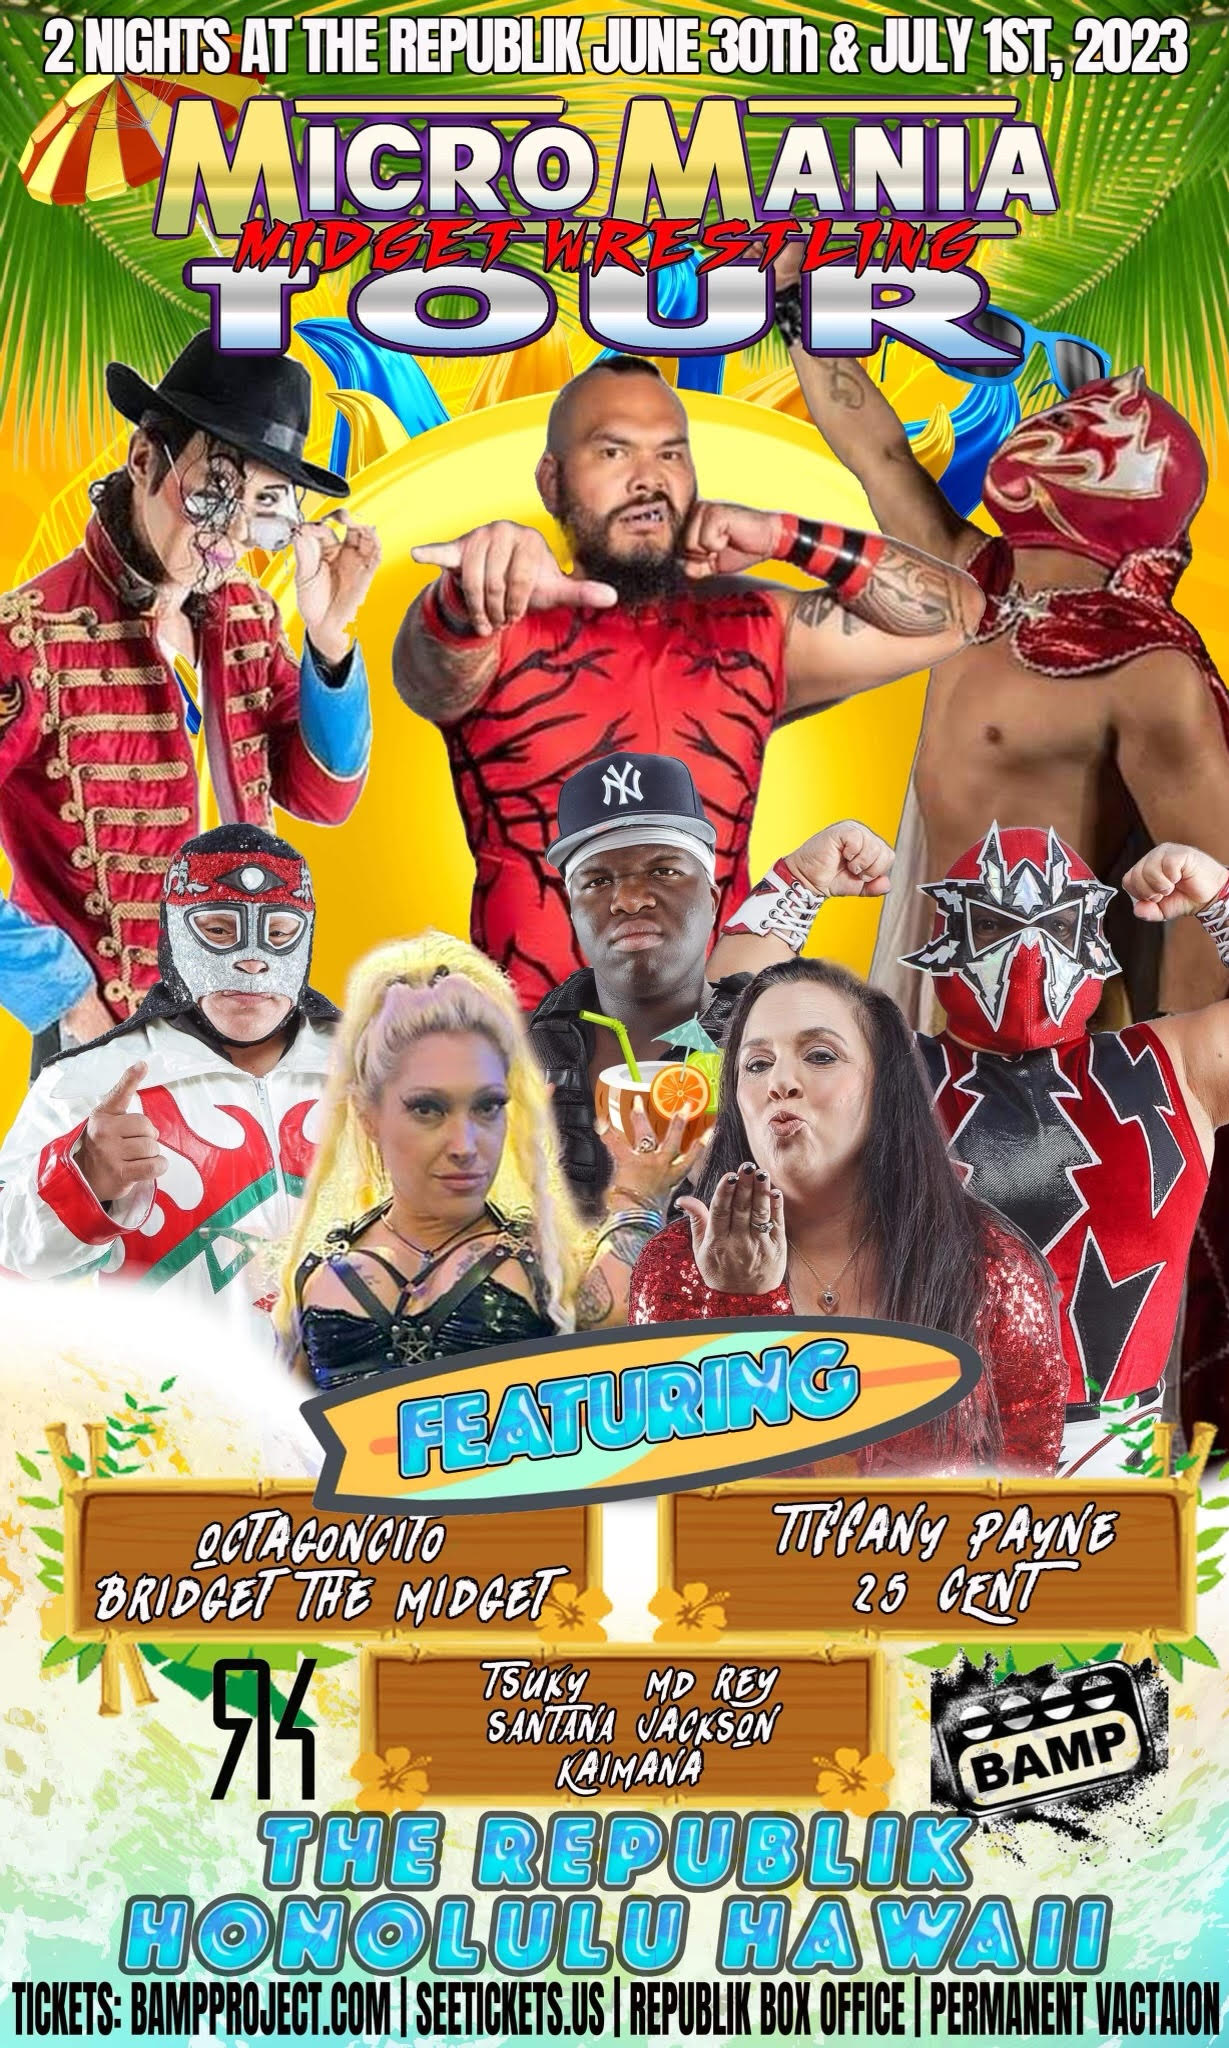 Buy Tickets to MicroMania Midget Wrestling in Honolulu on Jul 01, 2023